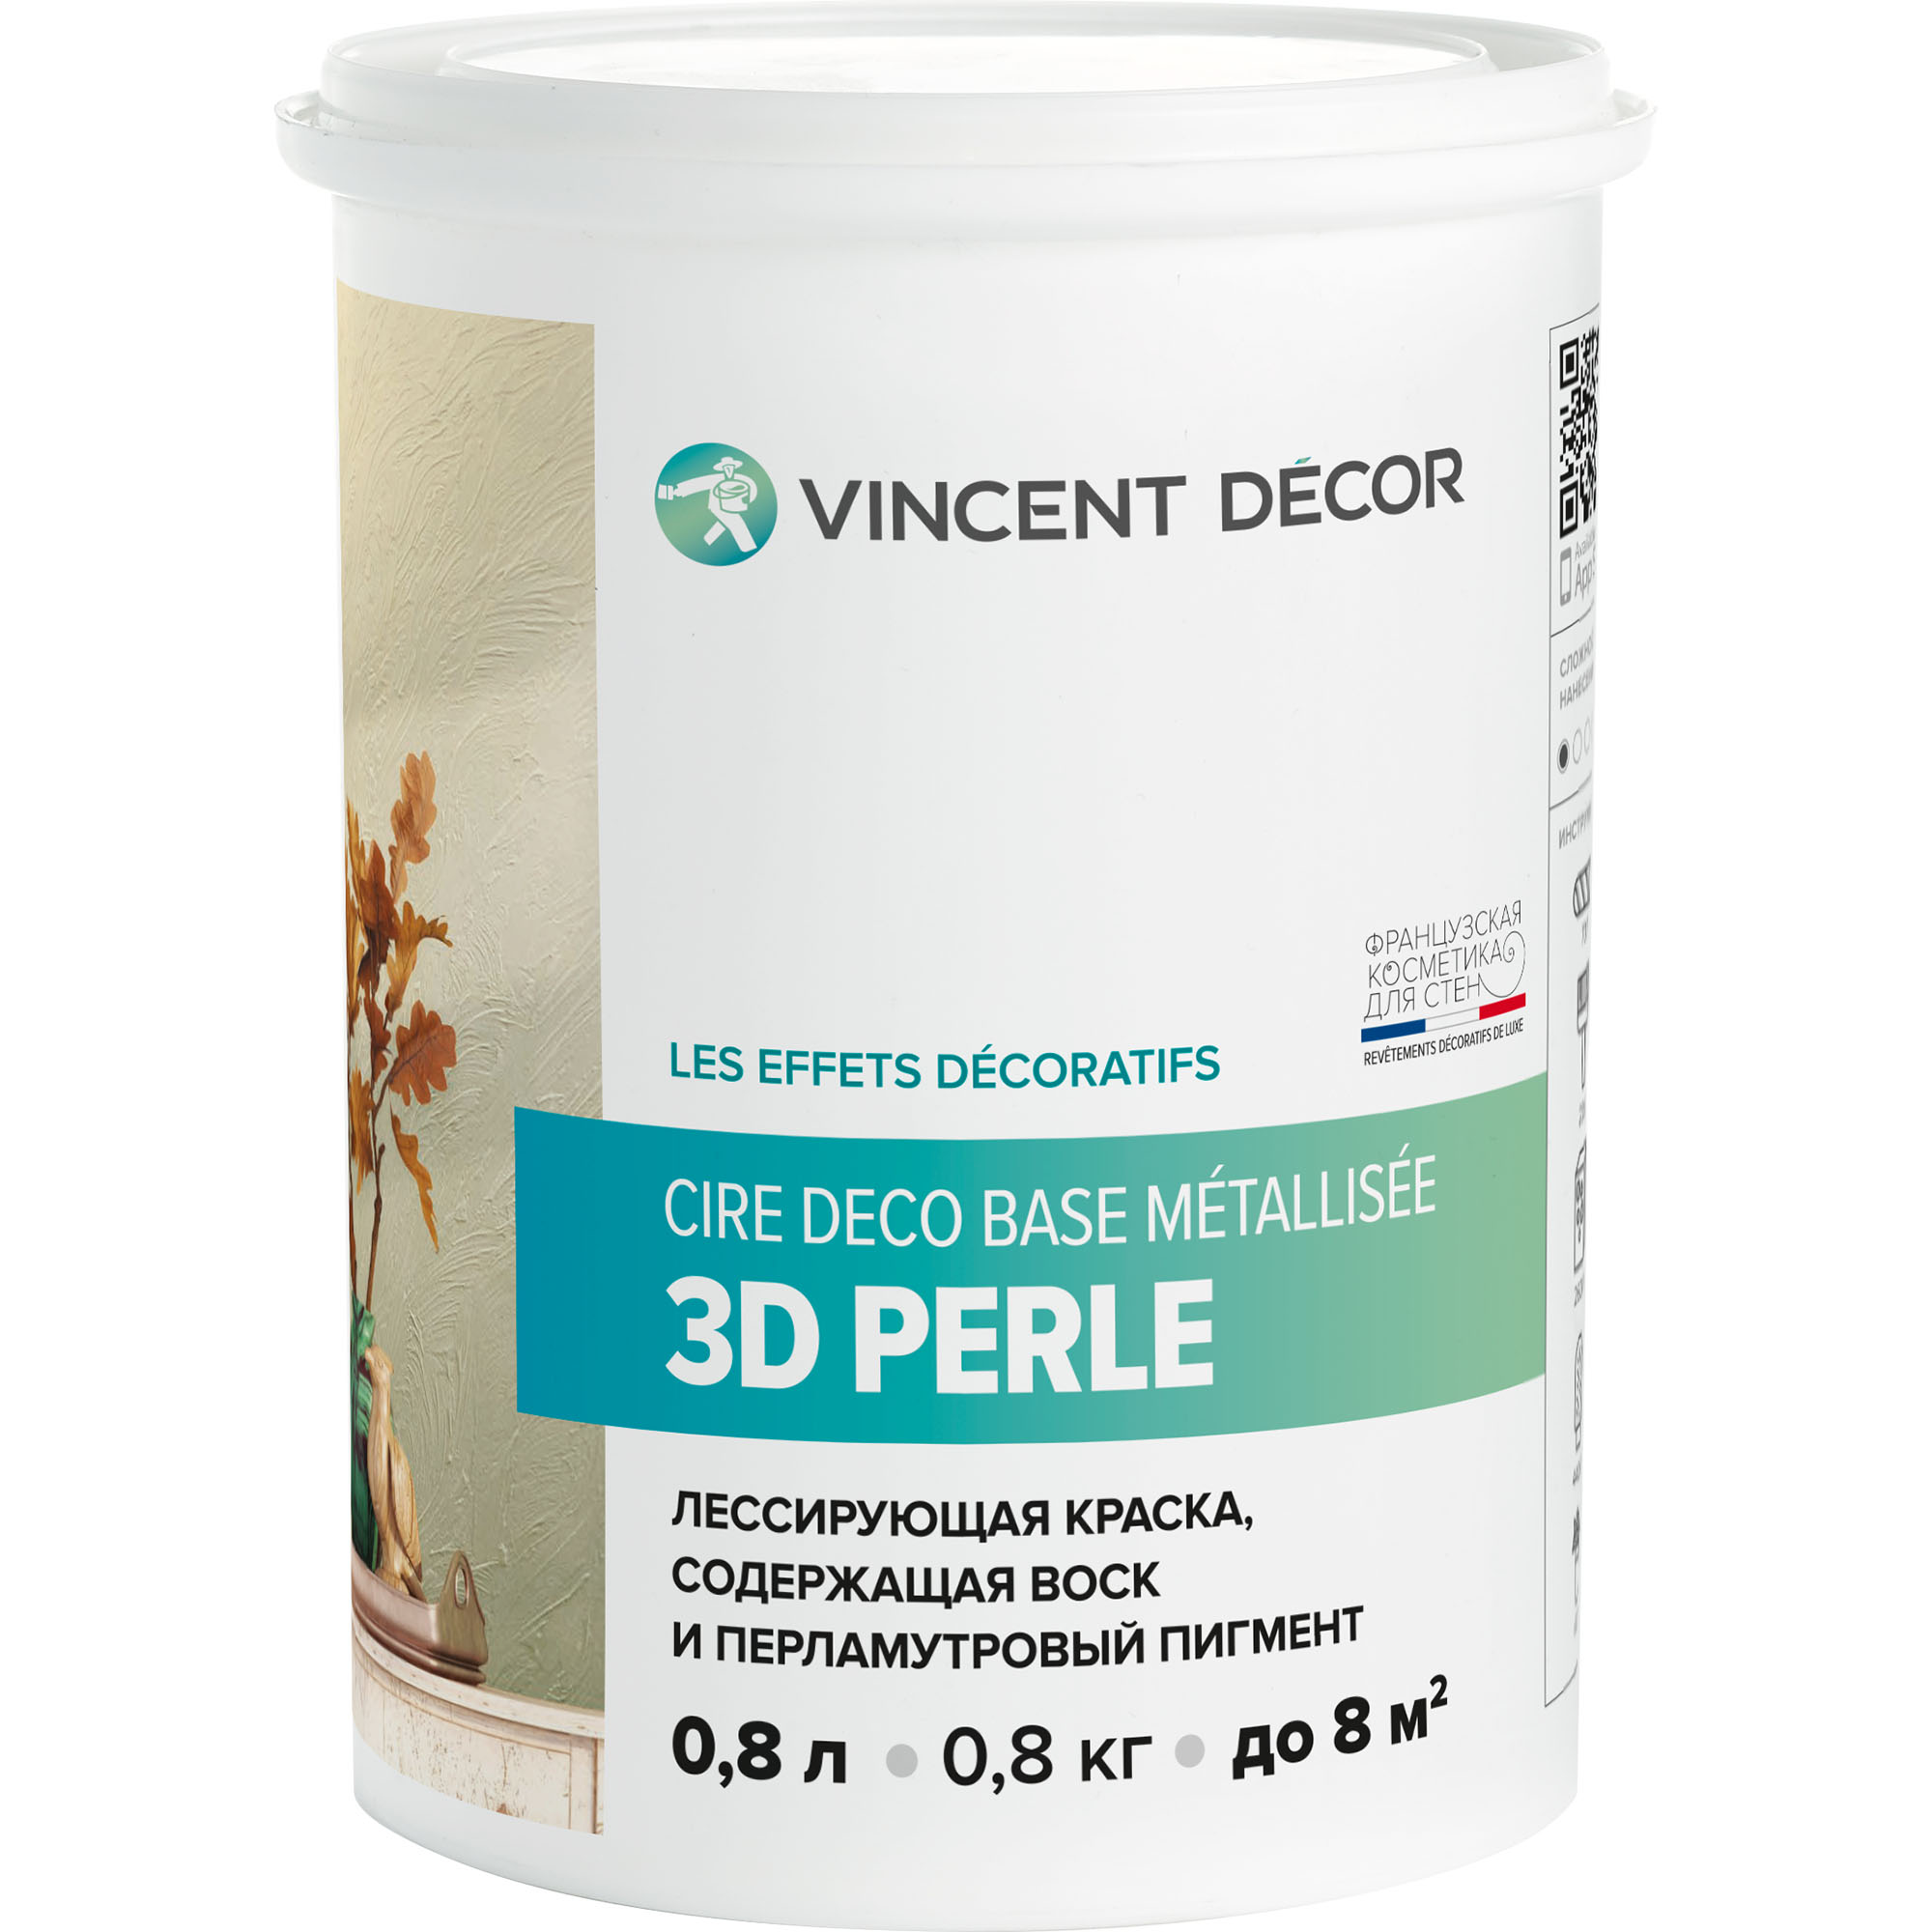 Краска лессирующая для декоративных покрытий Vincent Decor Cire deco base Metallisee 3D Perle золотистый перламутр 0,8 л грунтовка для декоративных покрытий vincent decor sous couche 1 л